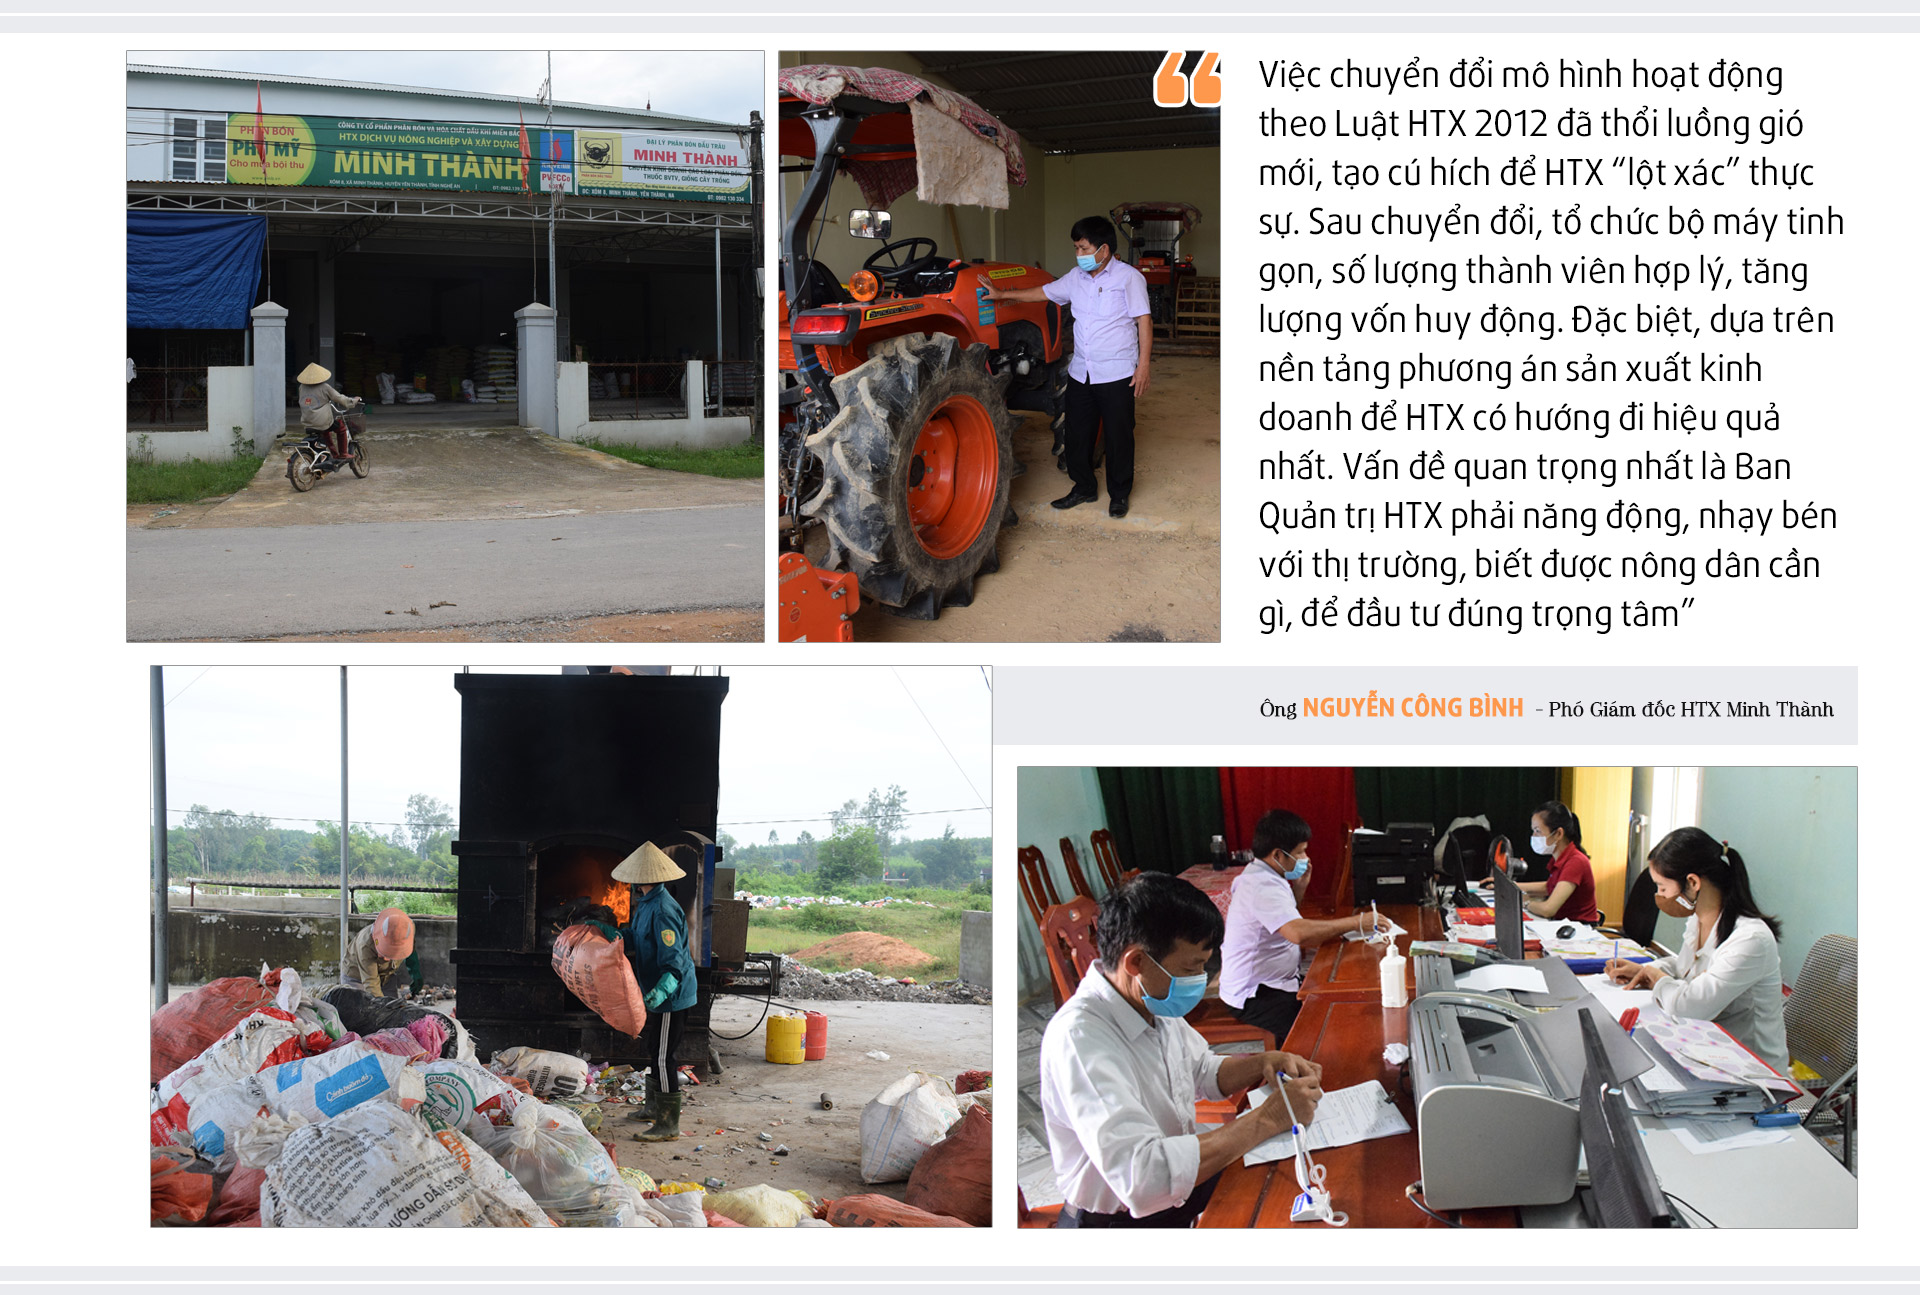 HTX Dịch vụ nông nghiệp và xây dựng Minh Thành sở hữu sản phẩm, dịch vụ có giá trị mang lại hiệu quả kinh tế cao. Ảnh Xuân Hoàng